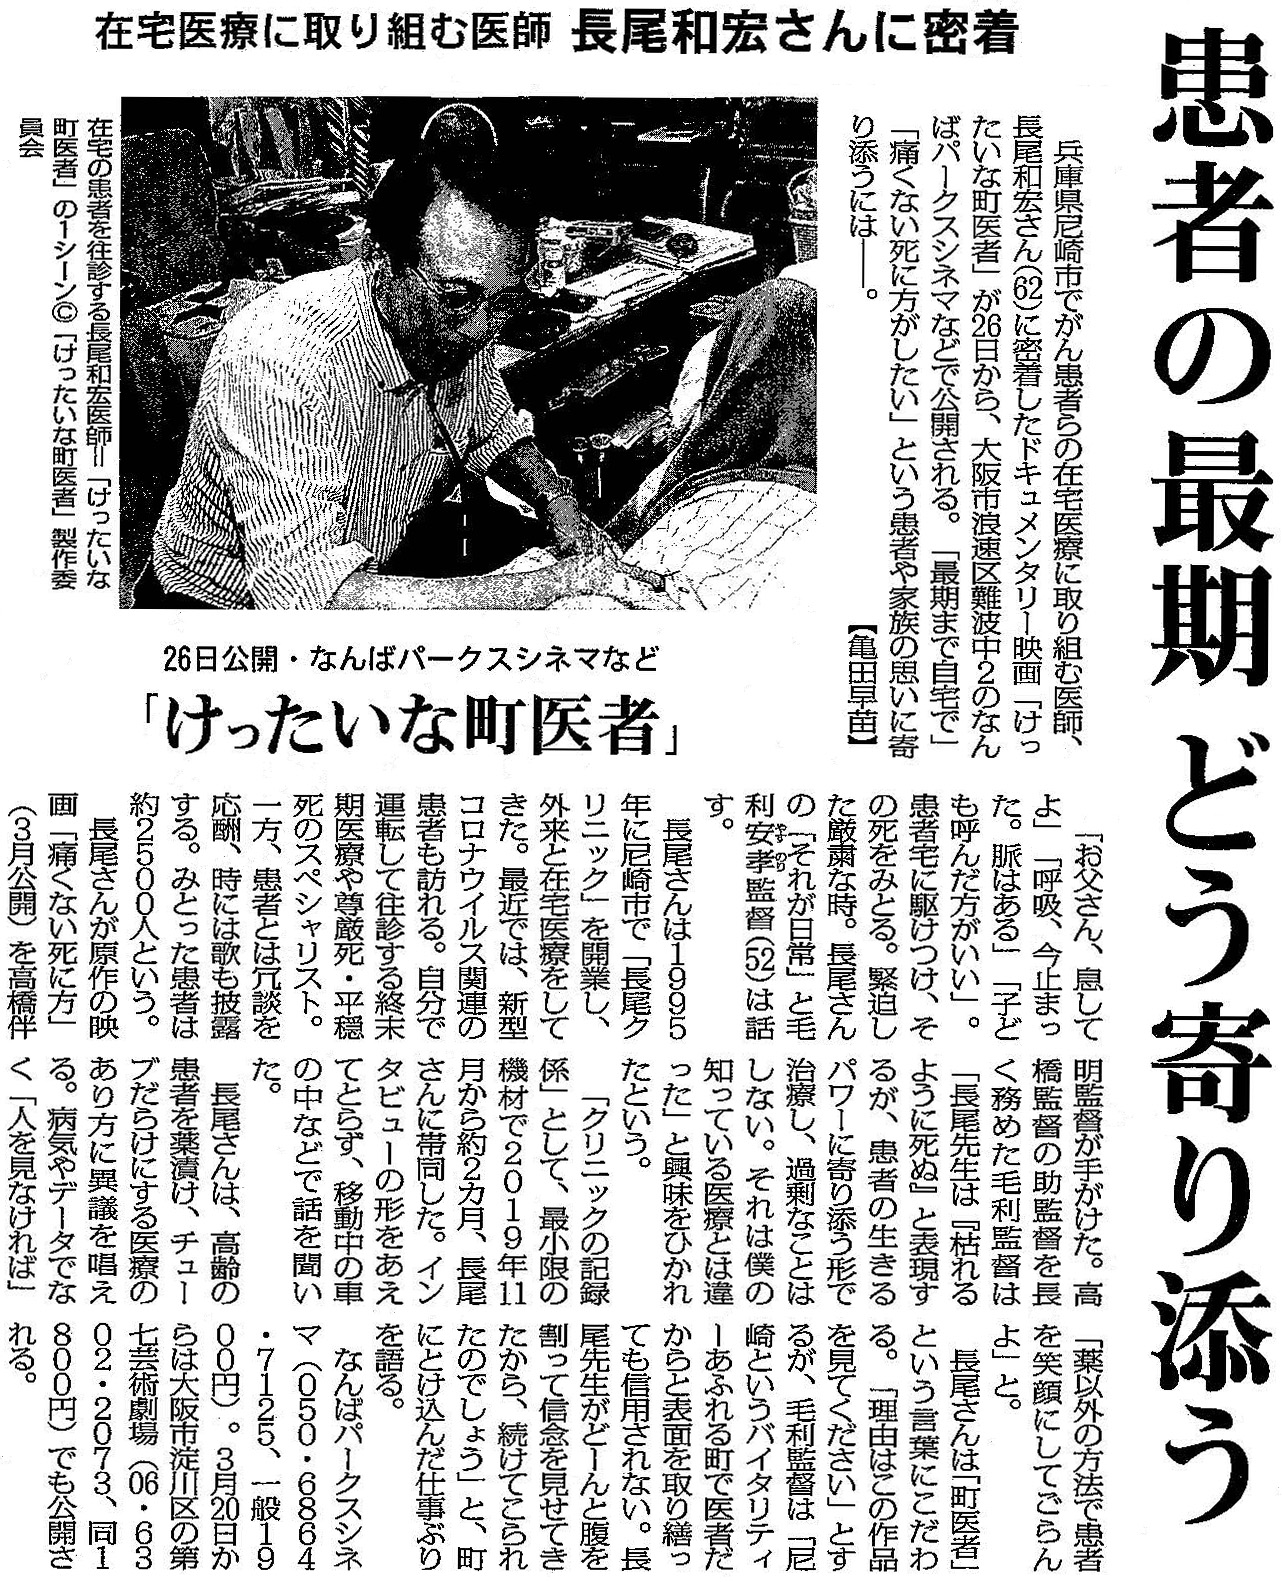 毎日新聞 2021年2月14日 大阪版掲載記事